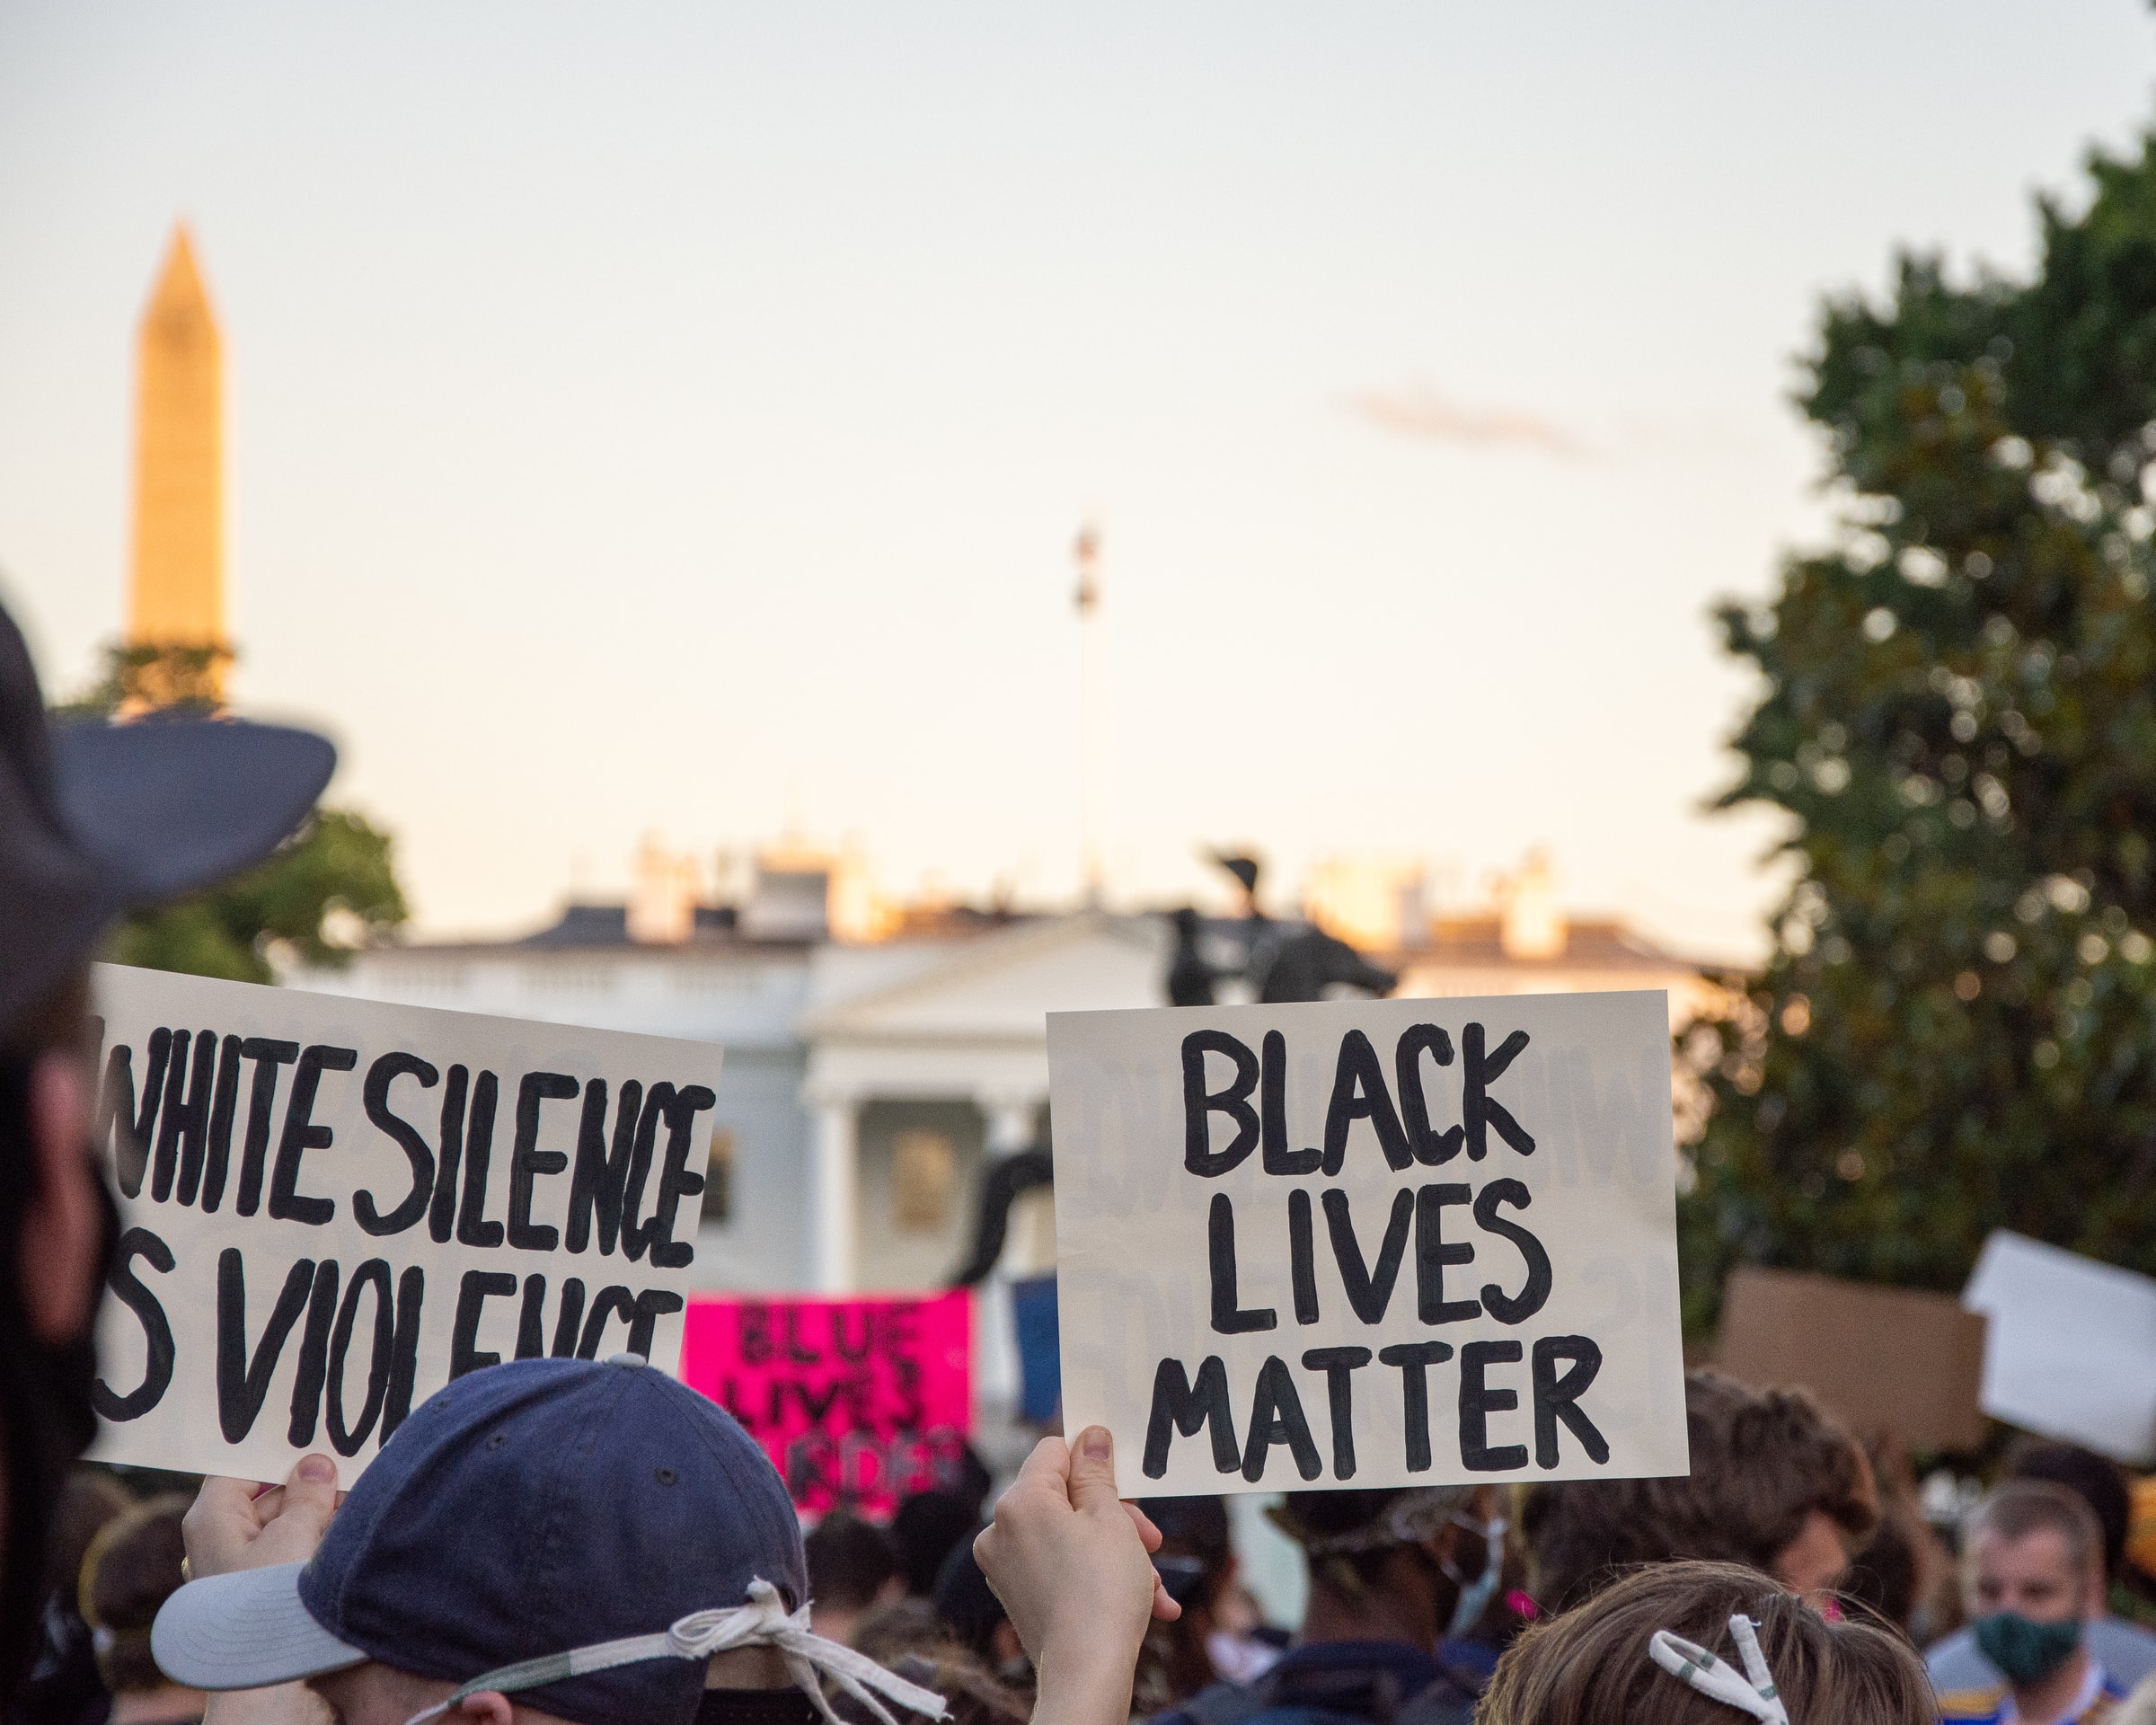 Black Lives Matter banner held up during a public protest